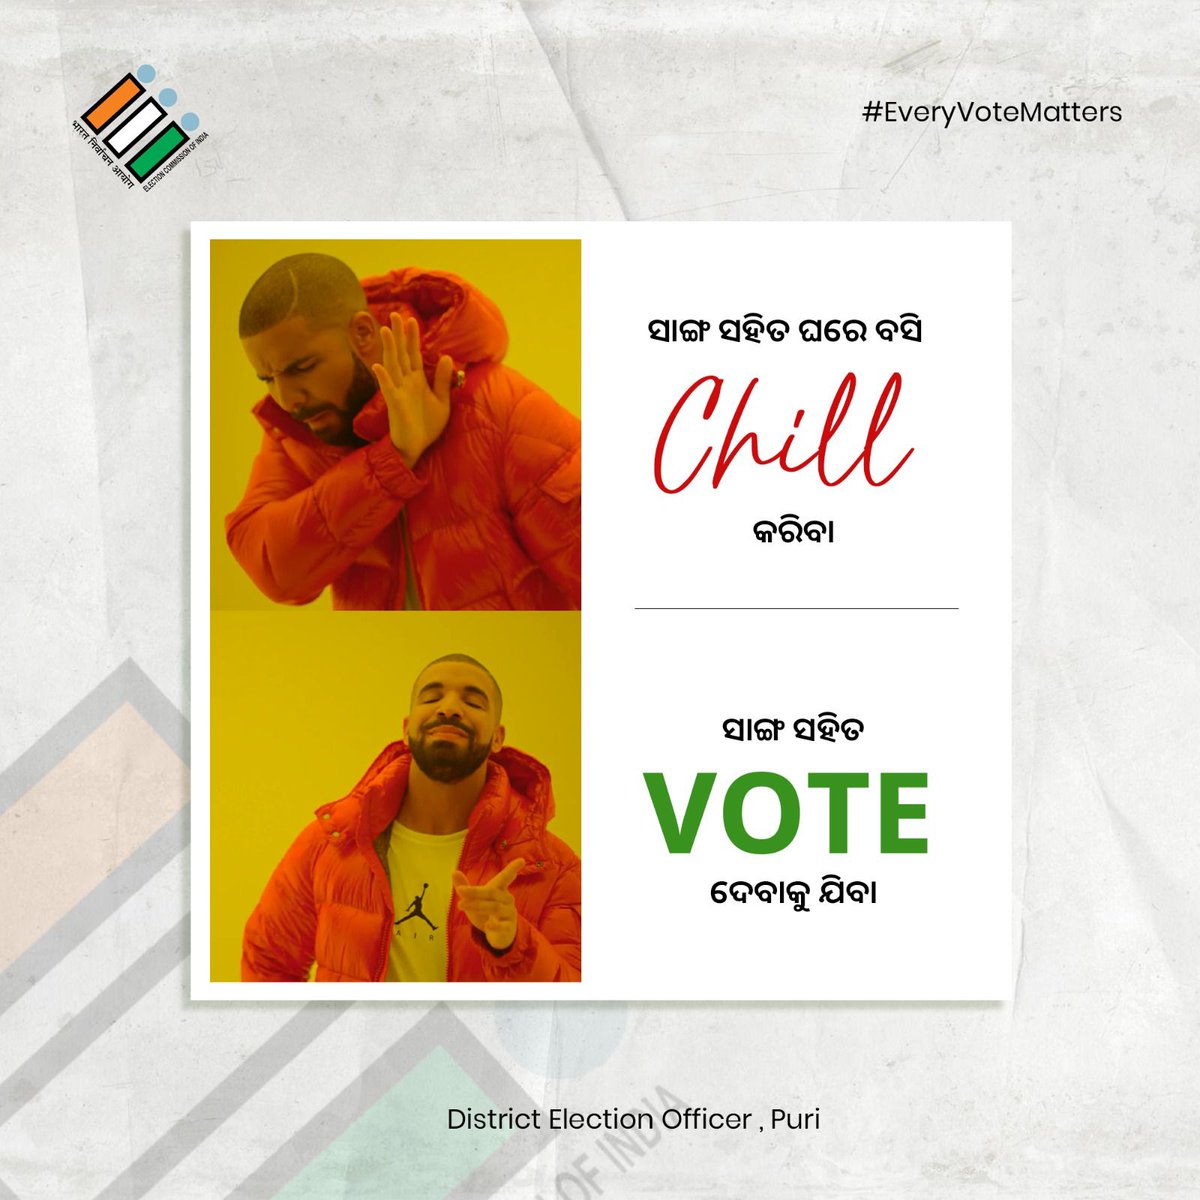 ଚାଲନ୍ତୁ ଏଥର ସାଙ୍ଗମାନଙ୍କ ସହିତ ଘରେ ବସି Chill ନ କରି ସାଙ୍ଗମାନଙ୍କ ସହିତ Vote ଦେଇ ଦେଶର ଅଗ୍ରଗତି ଦିଗରେ ନିଜର ଯୋଗଦାନ ଦେବା. @OdishaCeo @ECISVEEP